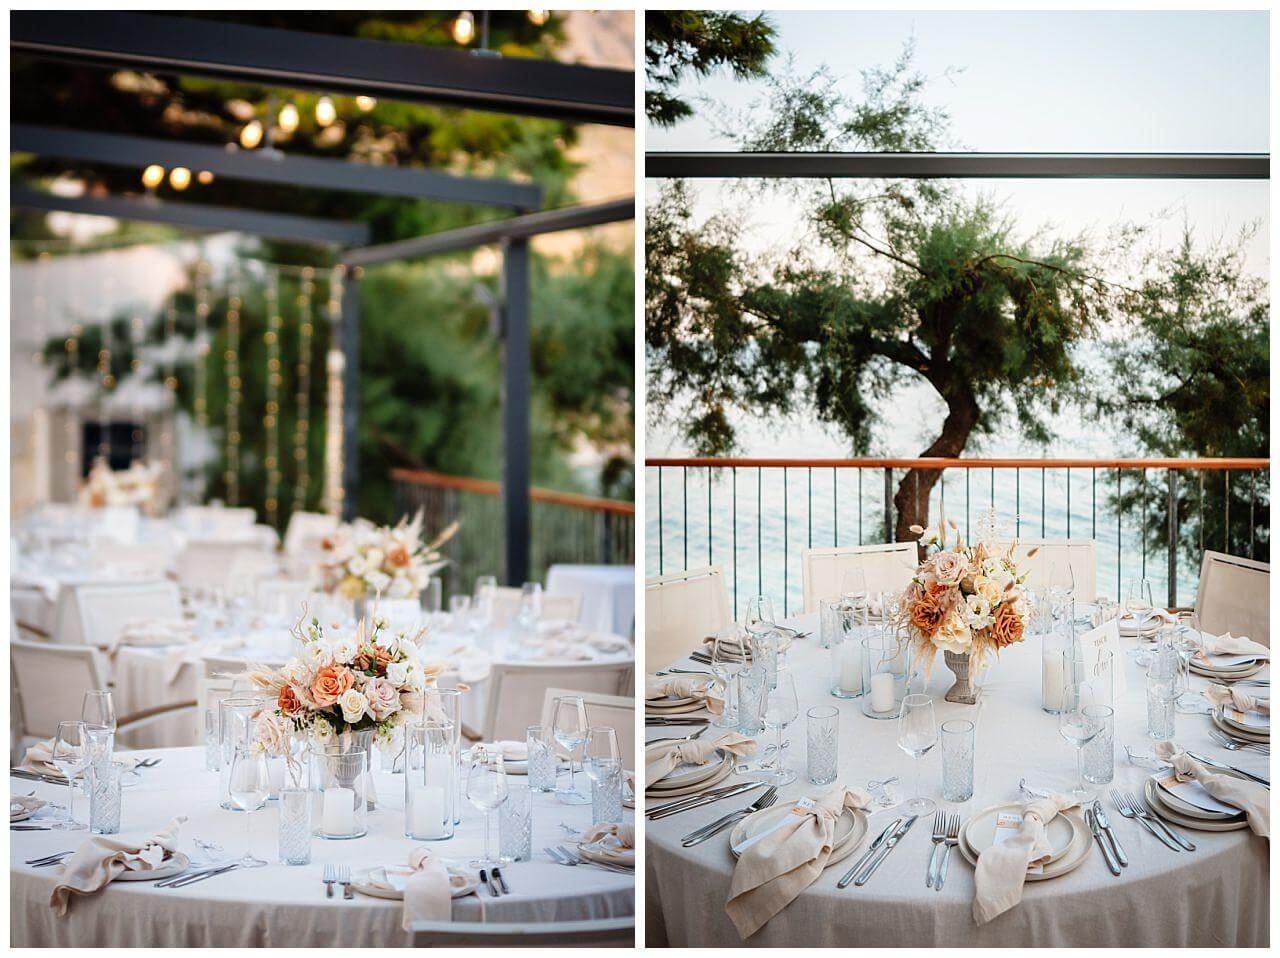 Tischdekoration für Hochzeit in weiß mit einem Blumenstrauß in orange weiß bei einer Hochzeit in Kroatien